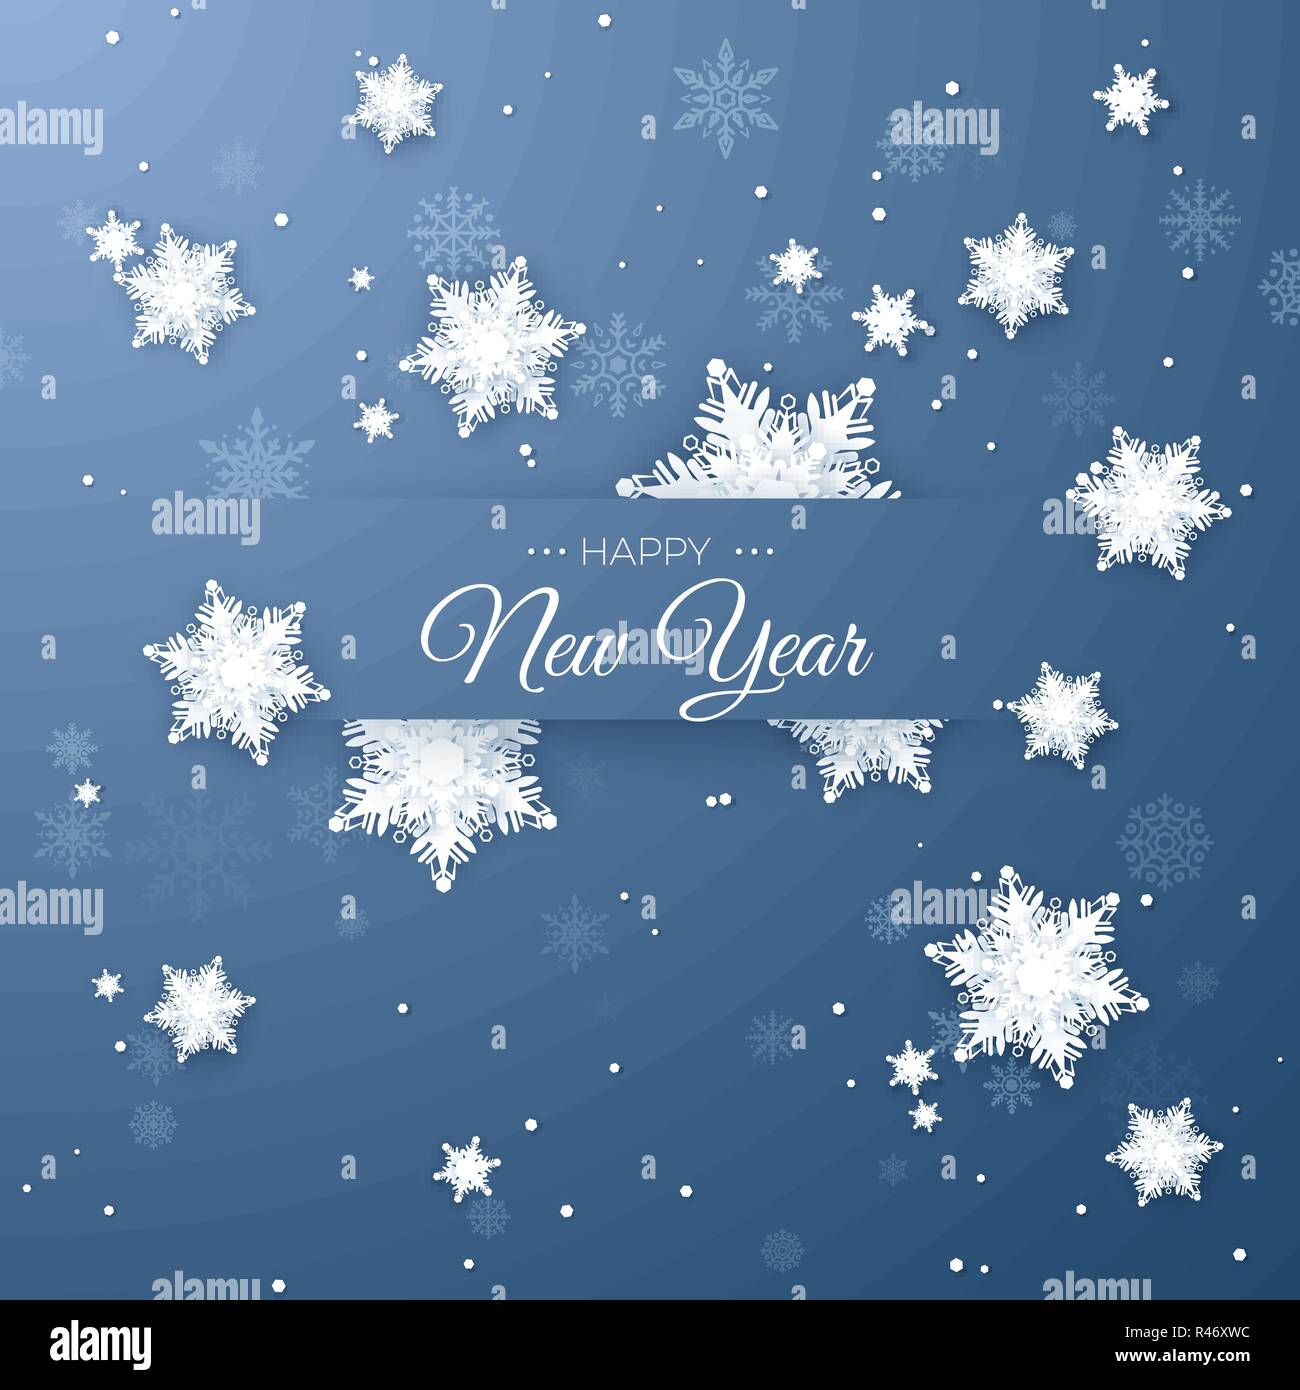 Frohes Neues Jahr Gruß Postkarte. Papier Schneeflocken Muster Hintergrund. Origami Schneefall. Vector Illustration auf blauem Hintergrund isoliert Stock Vektor